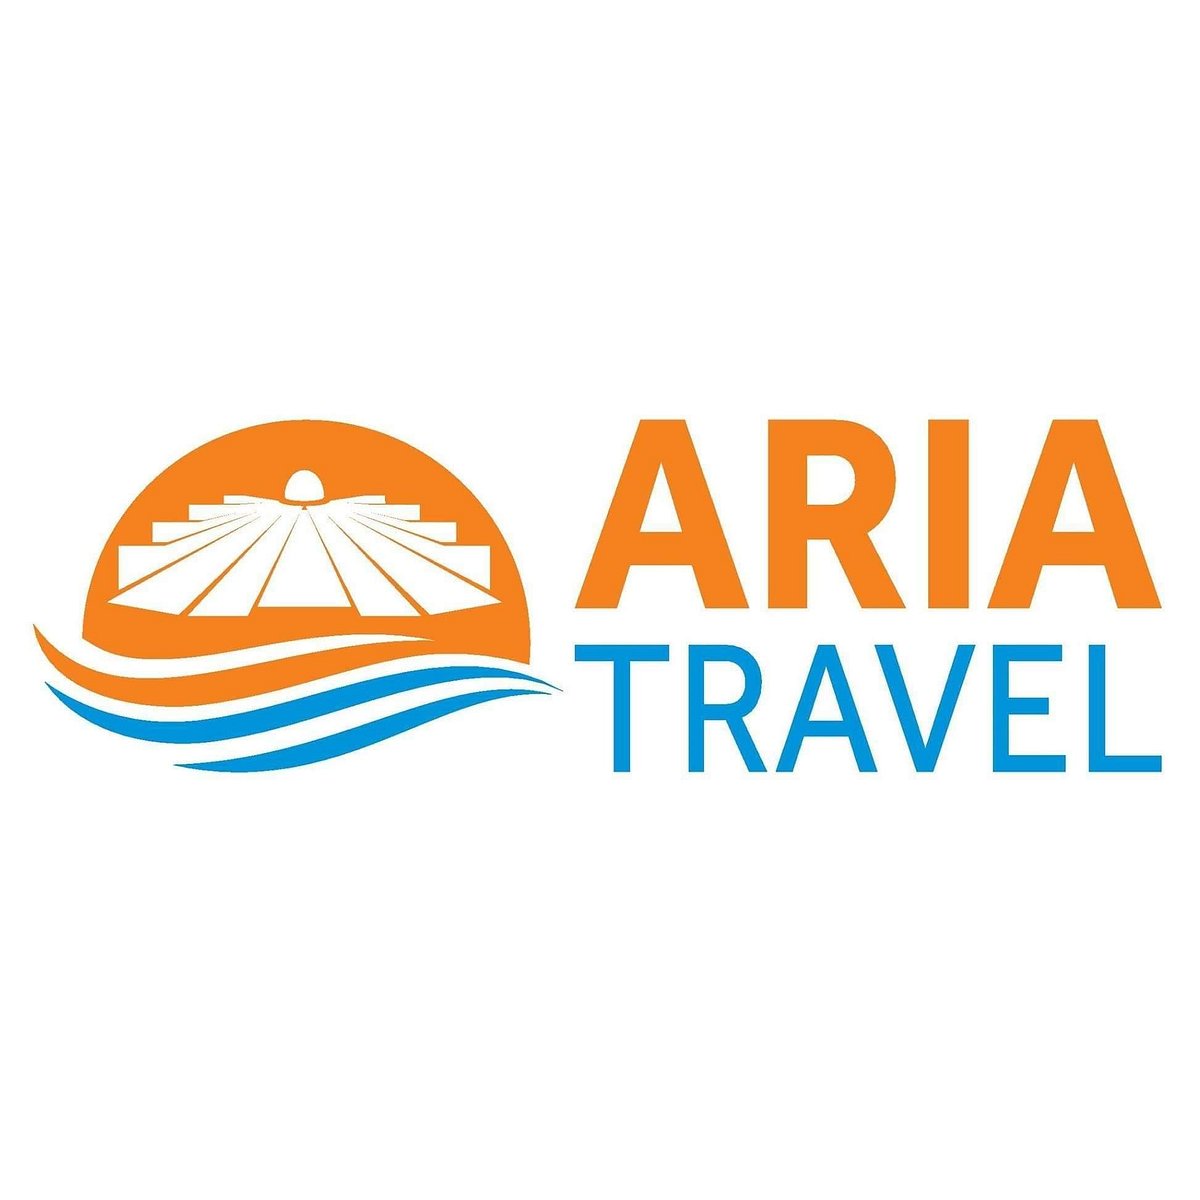 albania travel company